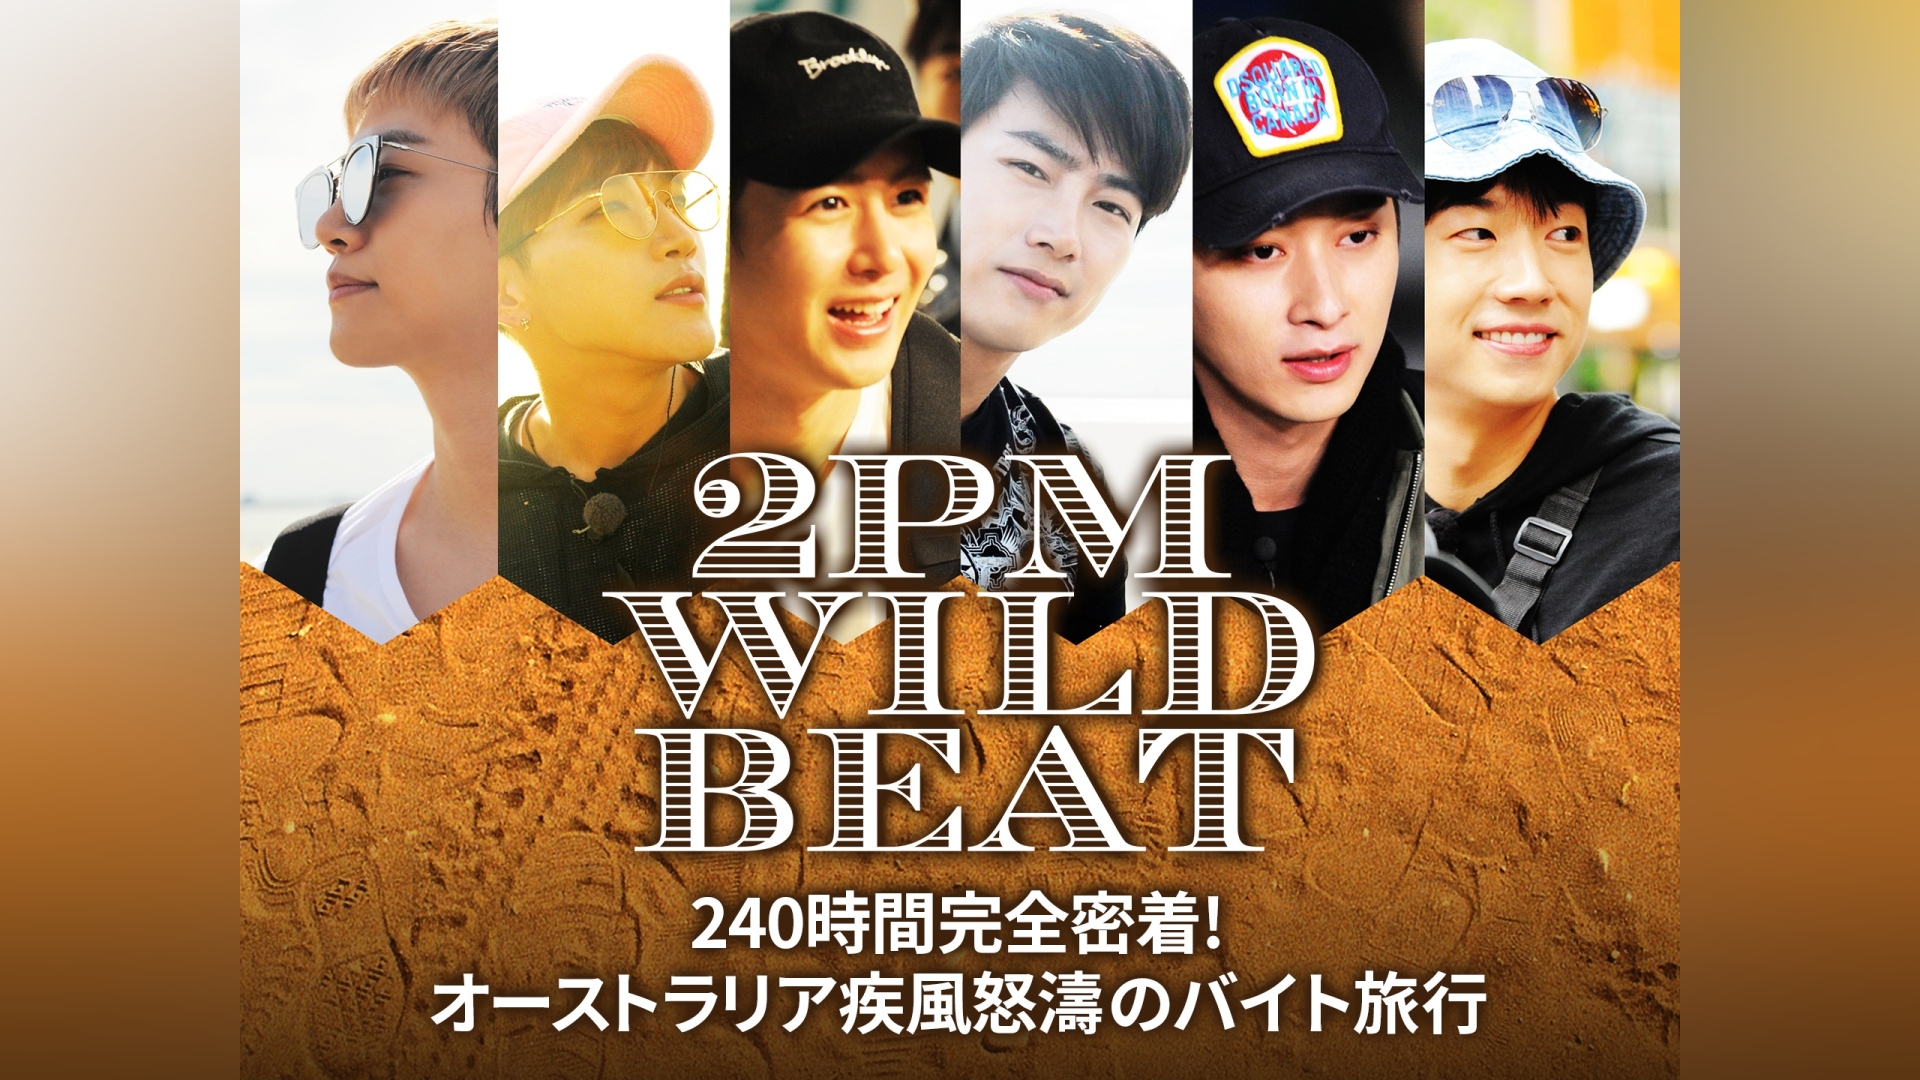 2PM WILD BEAT～240時間完全密着!オーストラリア疾風怒濤のバイト旅行 